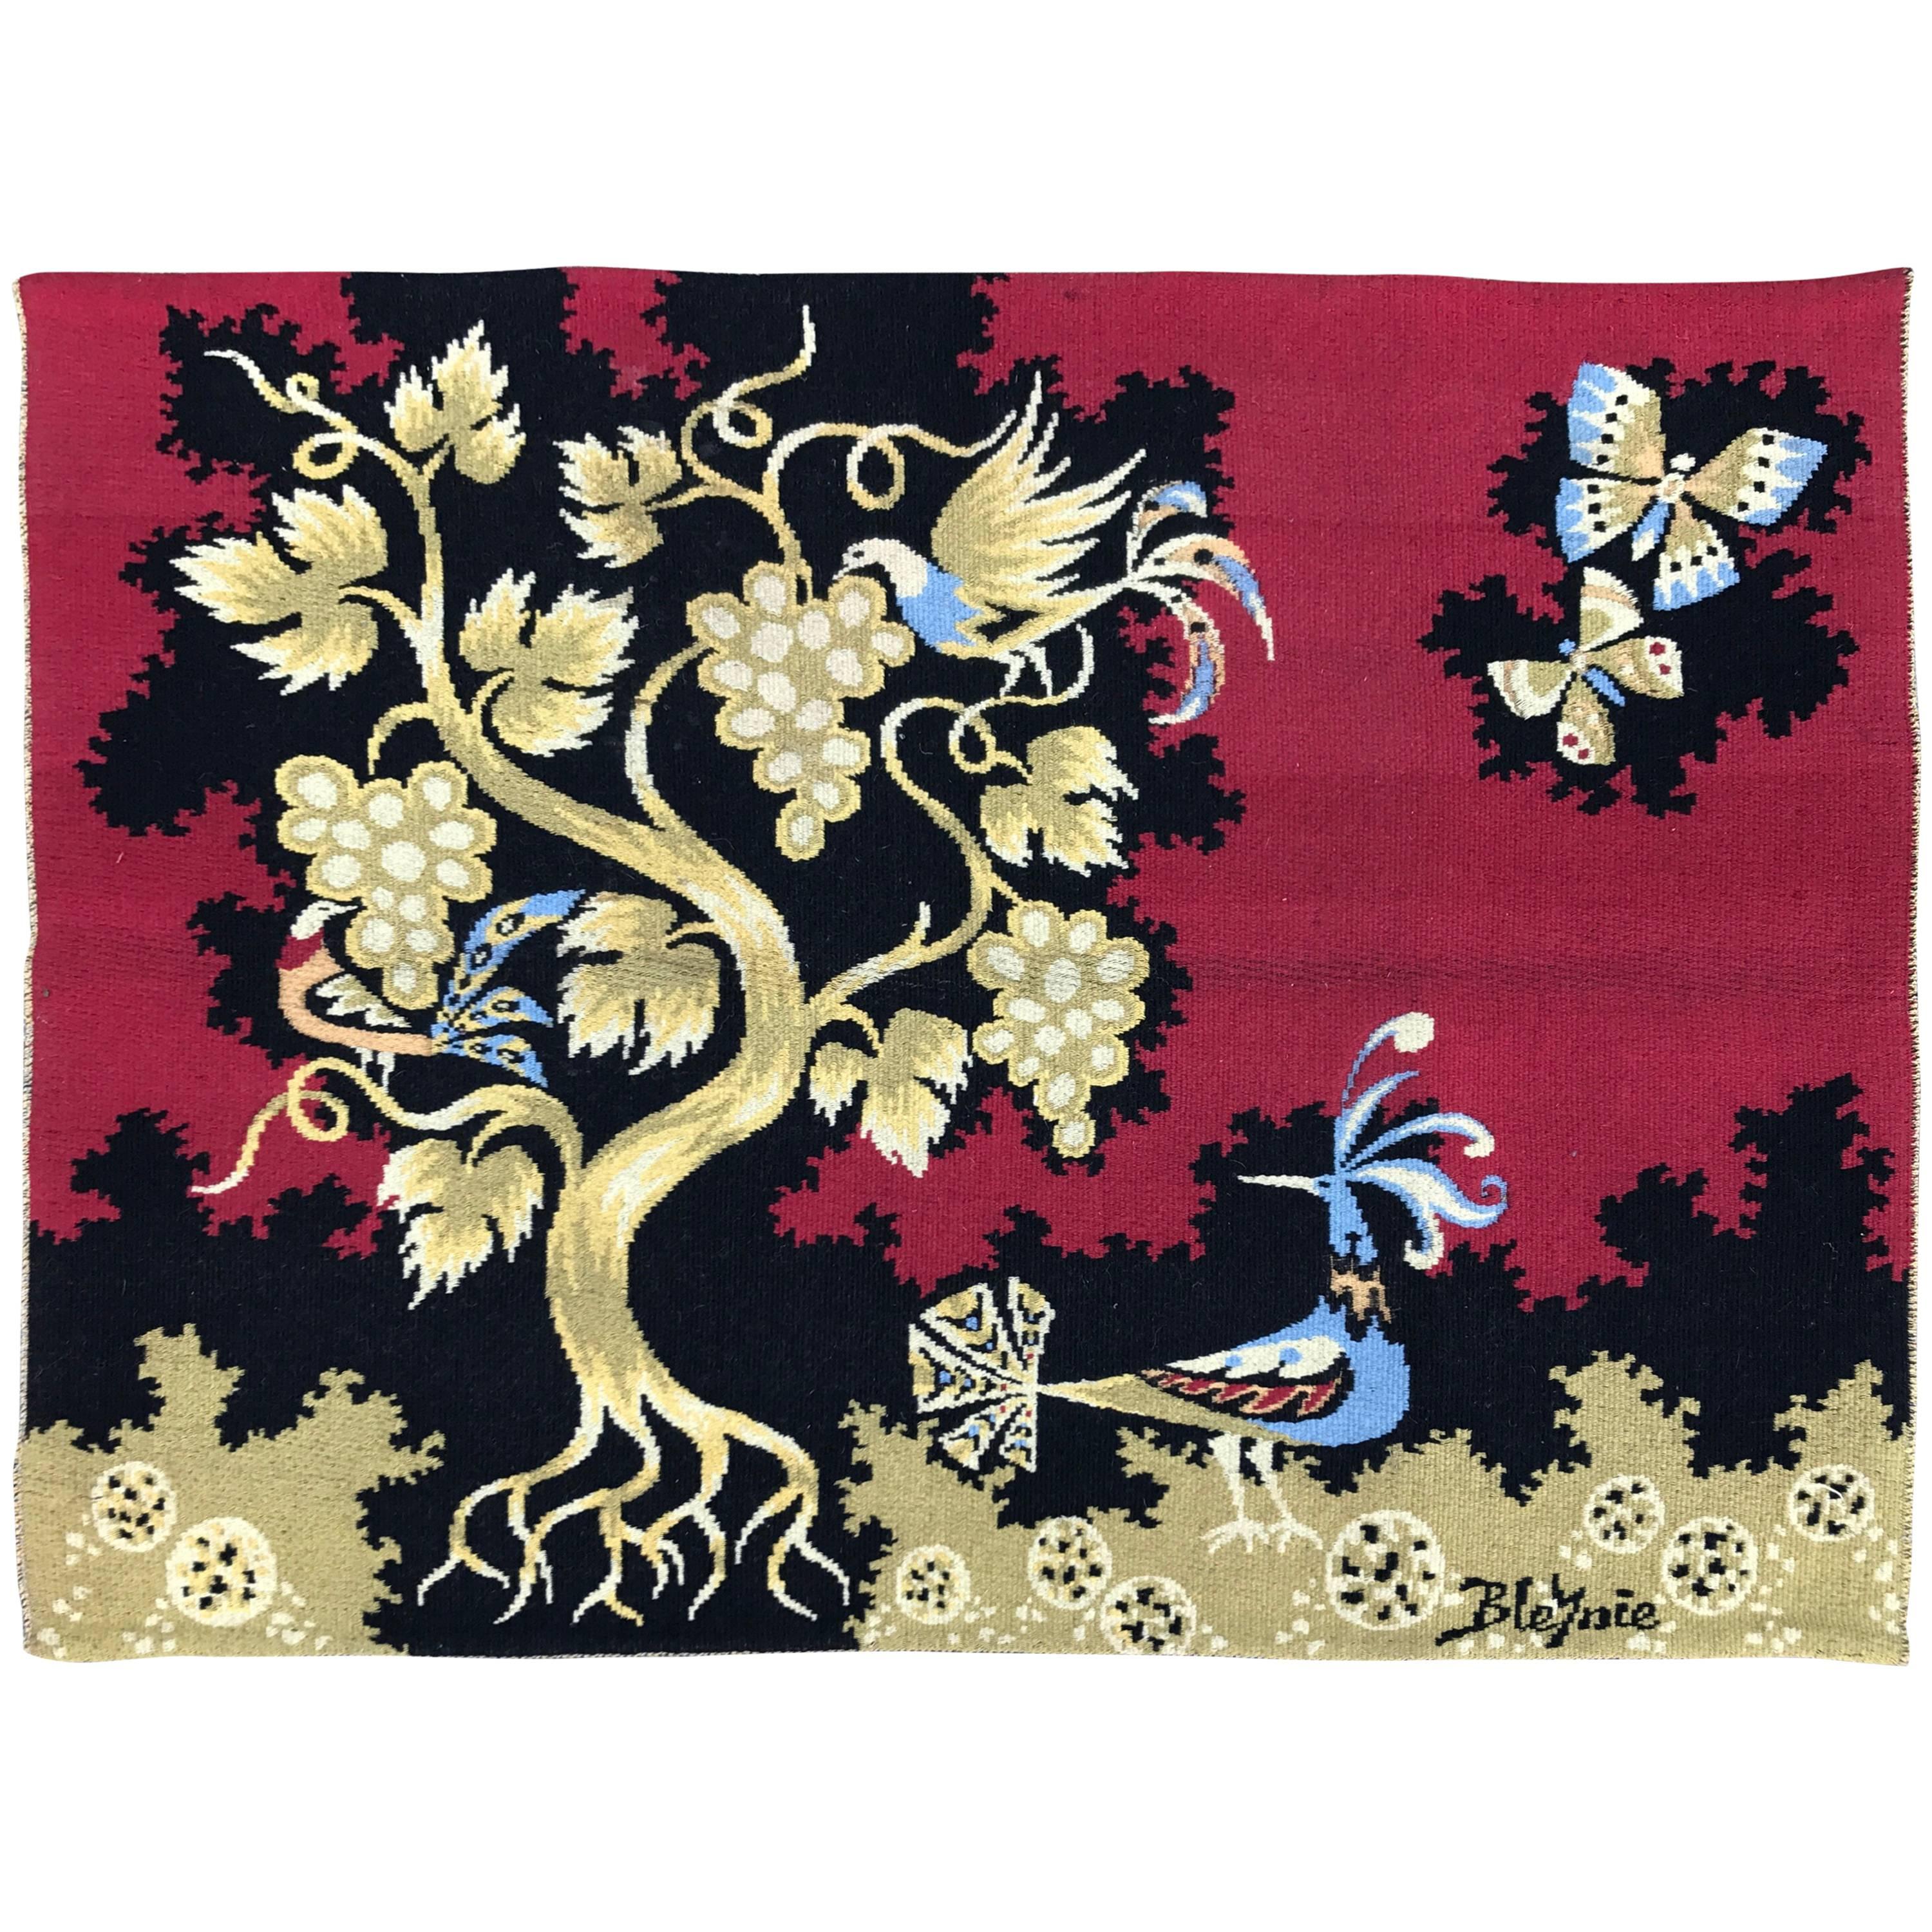 Belgian Handwoven Red Wool Tapestry by Claude Bleynie